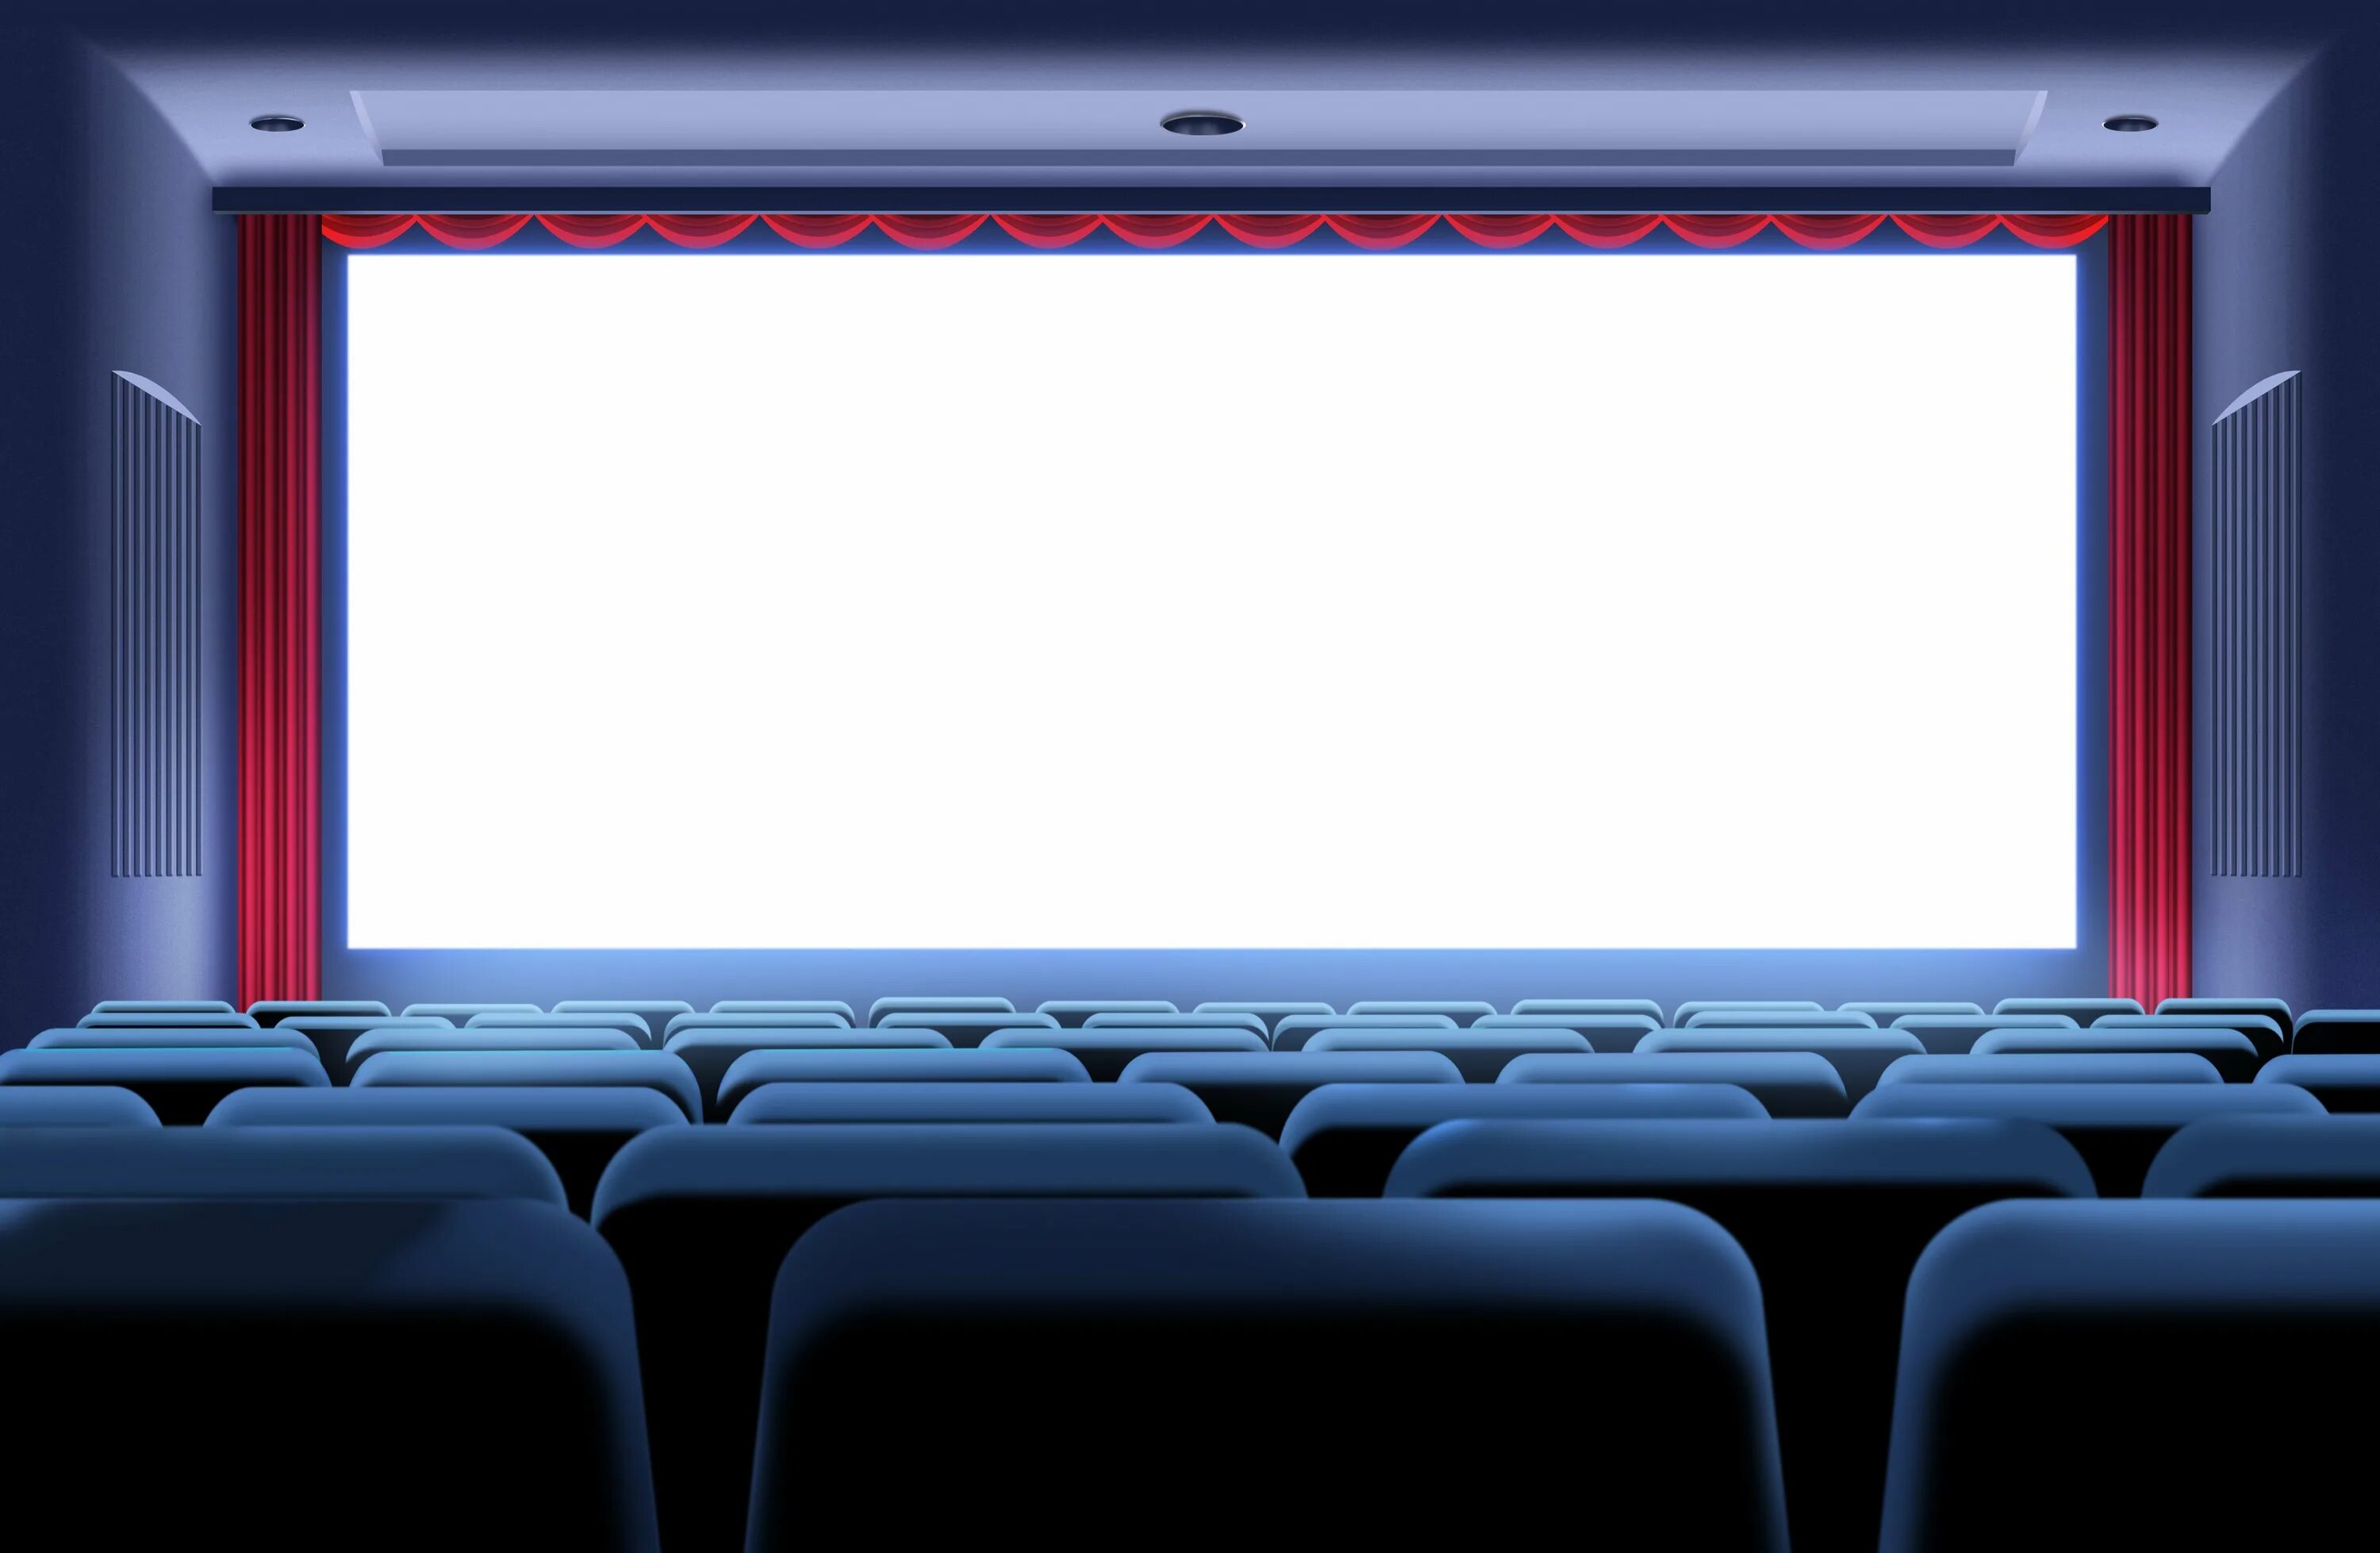 Сеанс кинофильма. Экран кинотеатра. Сцена кинотеатра. Фон экран кинотеатра. Кинозал экран.